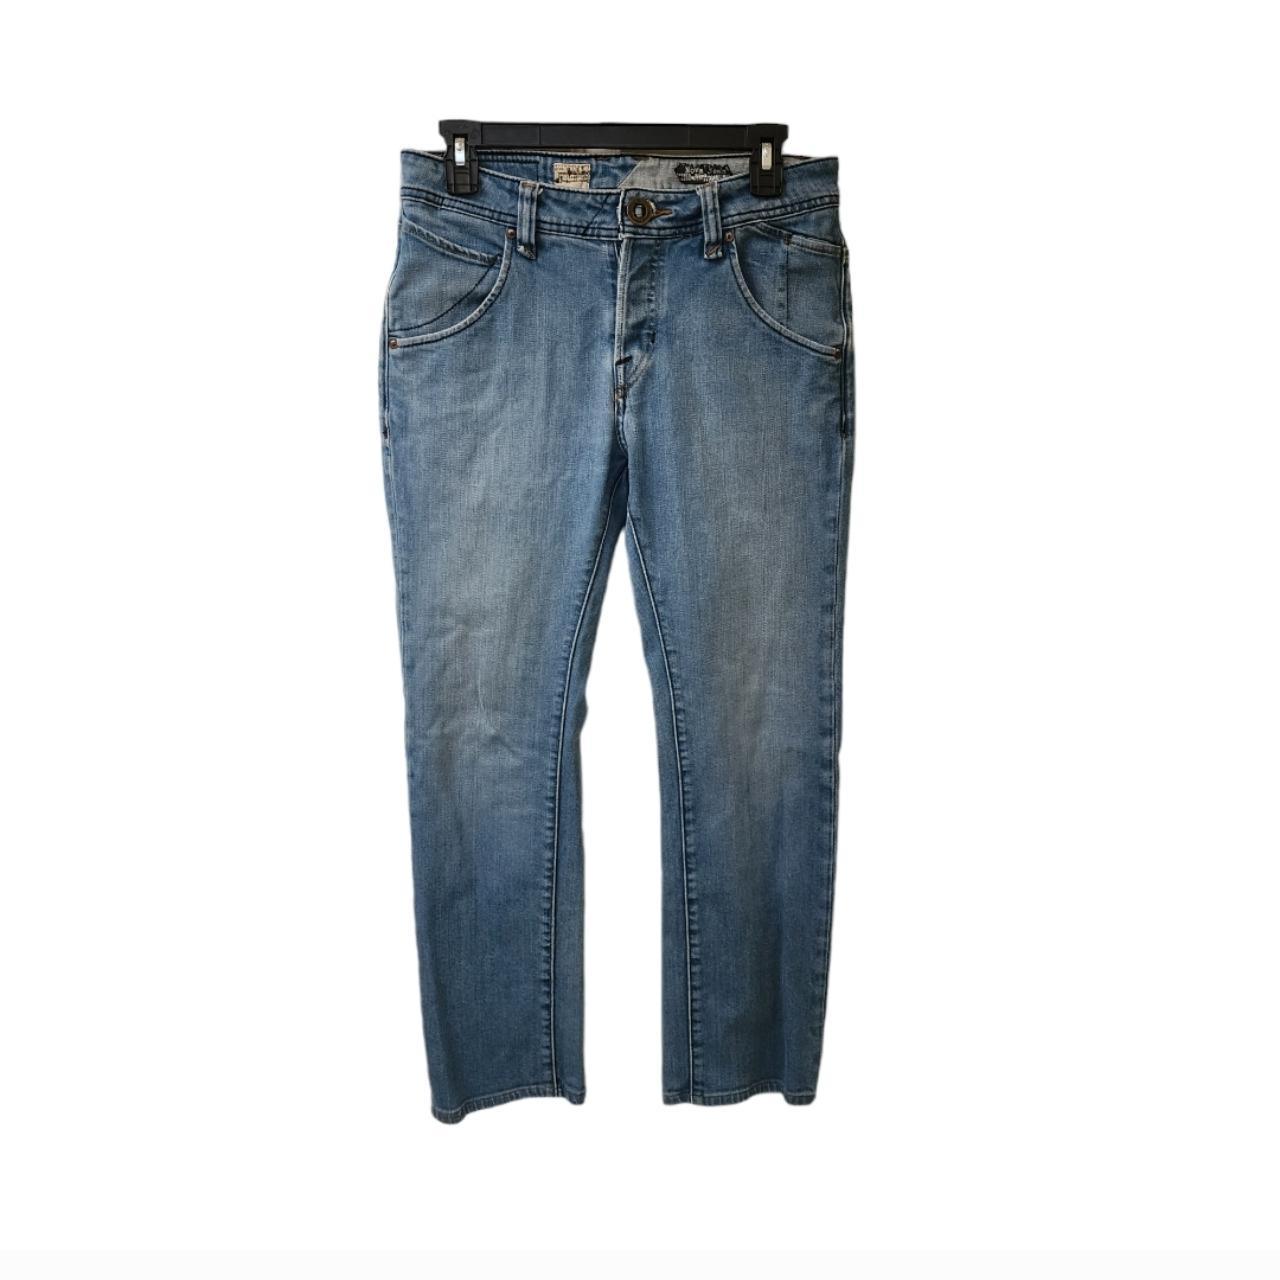 stadig høflighed bomuld Volcom Stone Nova Jeans Men's Size 30 Modern... - Depop